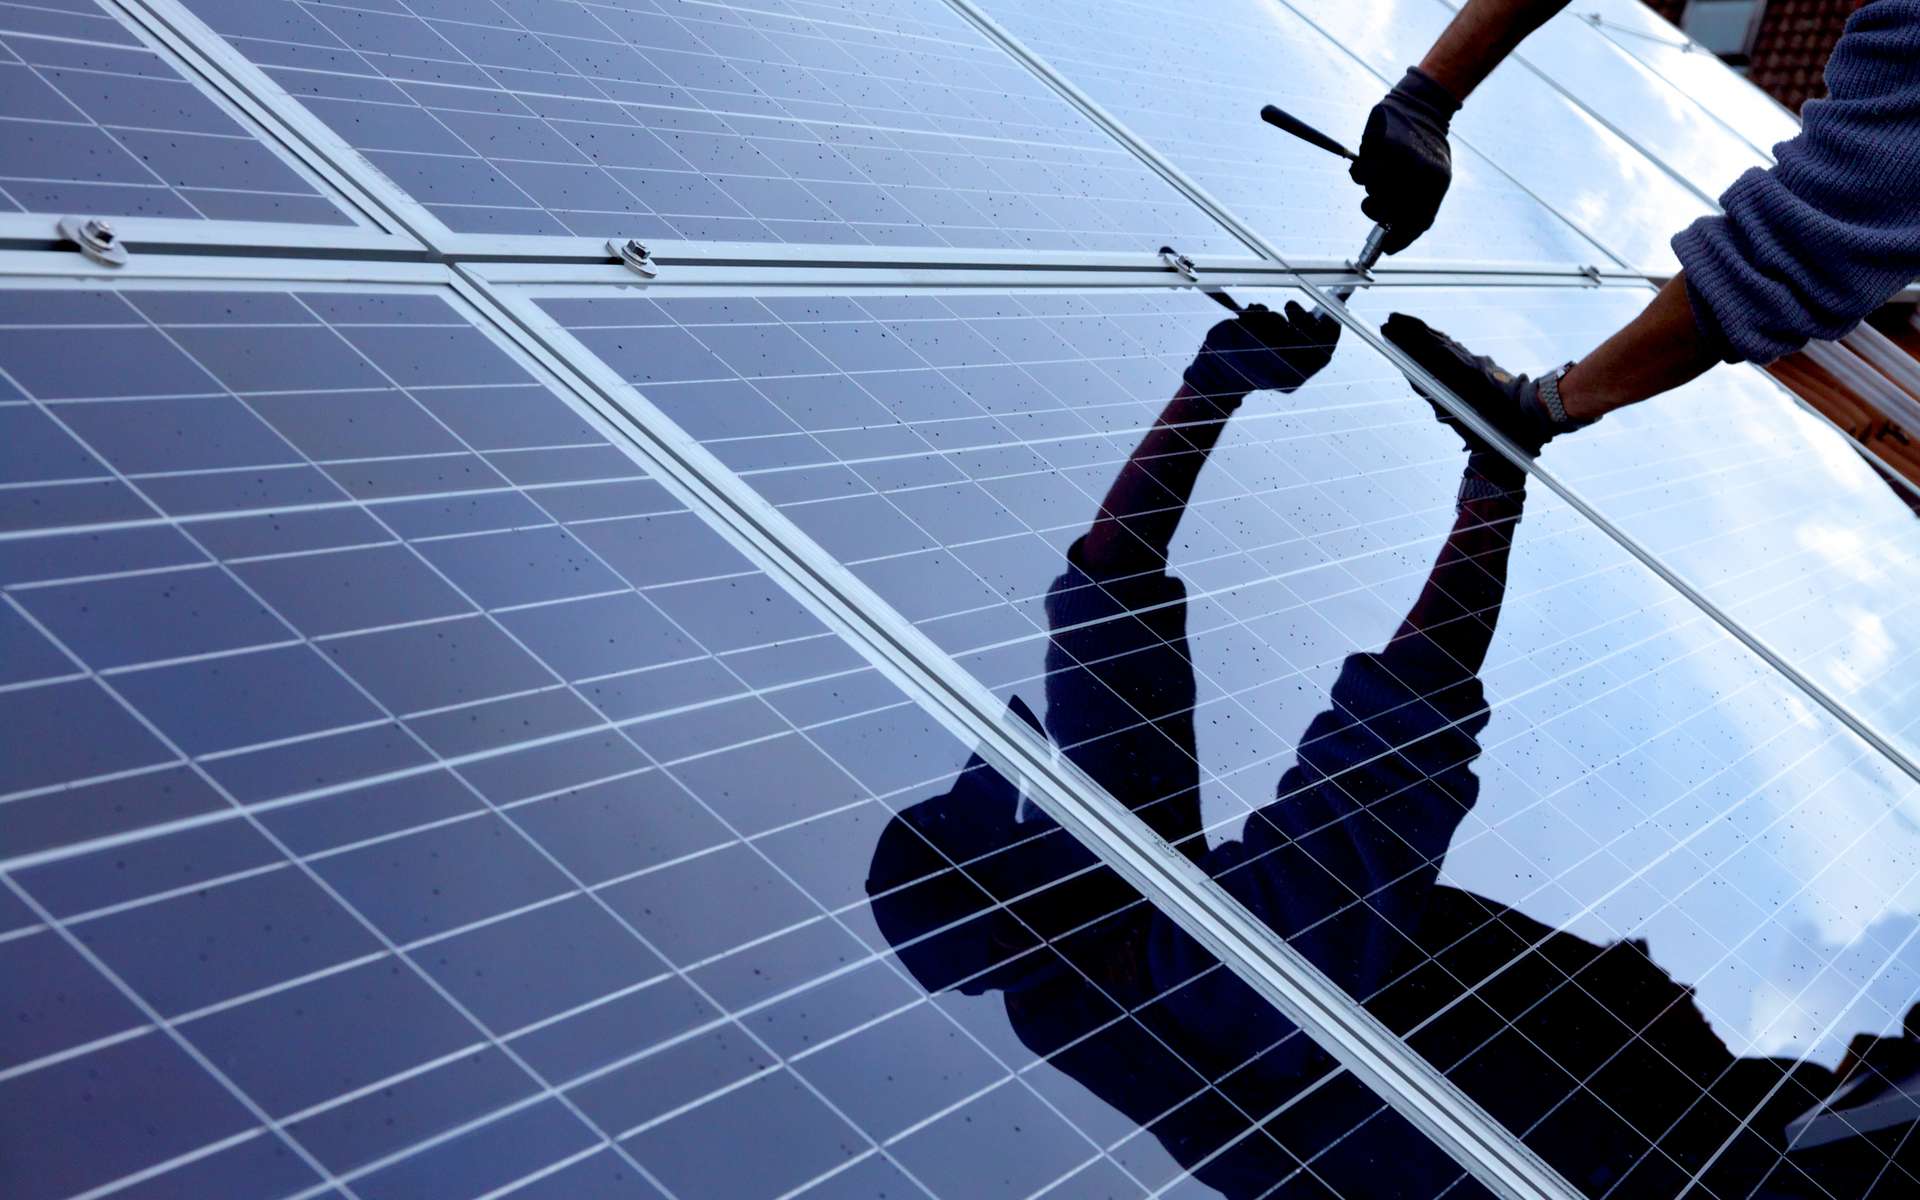 Installer des panneaux solaires, une solution pour produire sa propre énergie renouvelable. © Simon Krauss, Adobe Stock